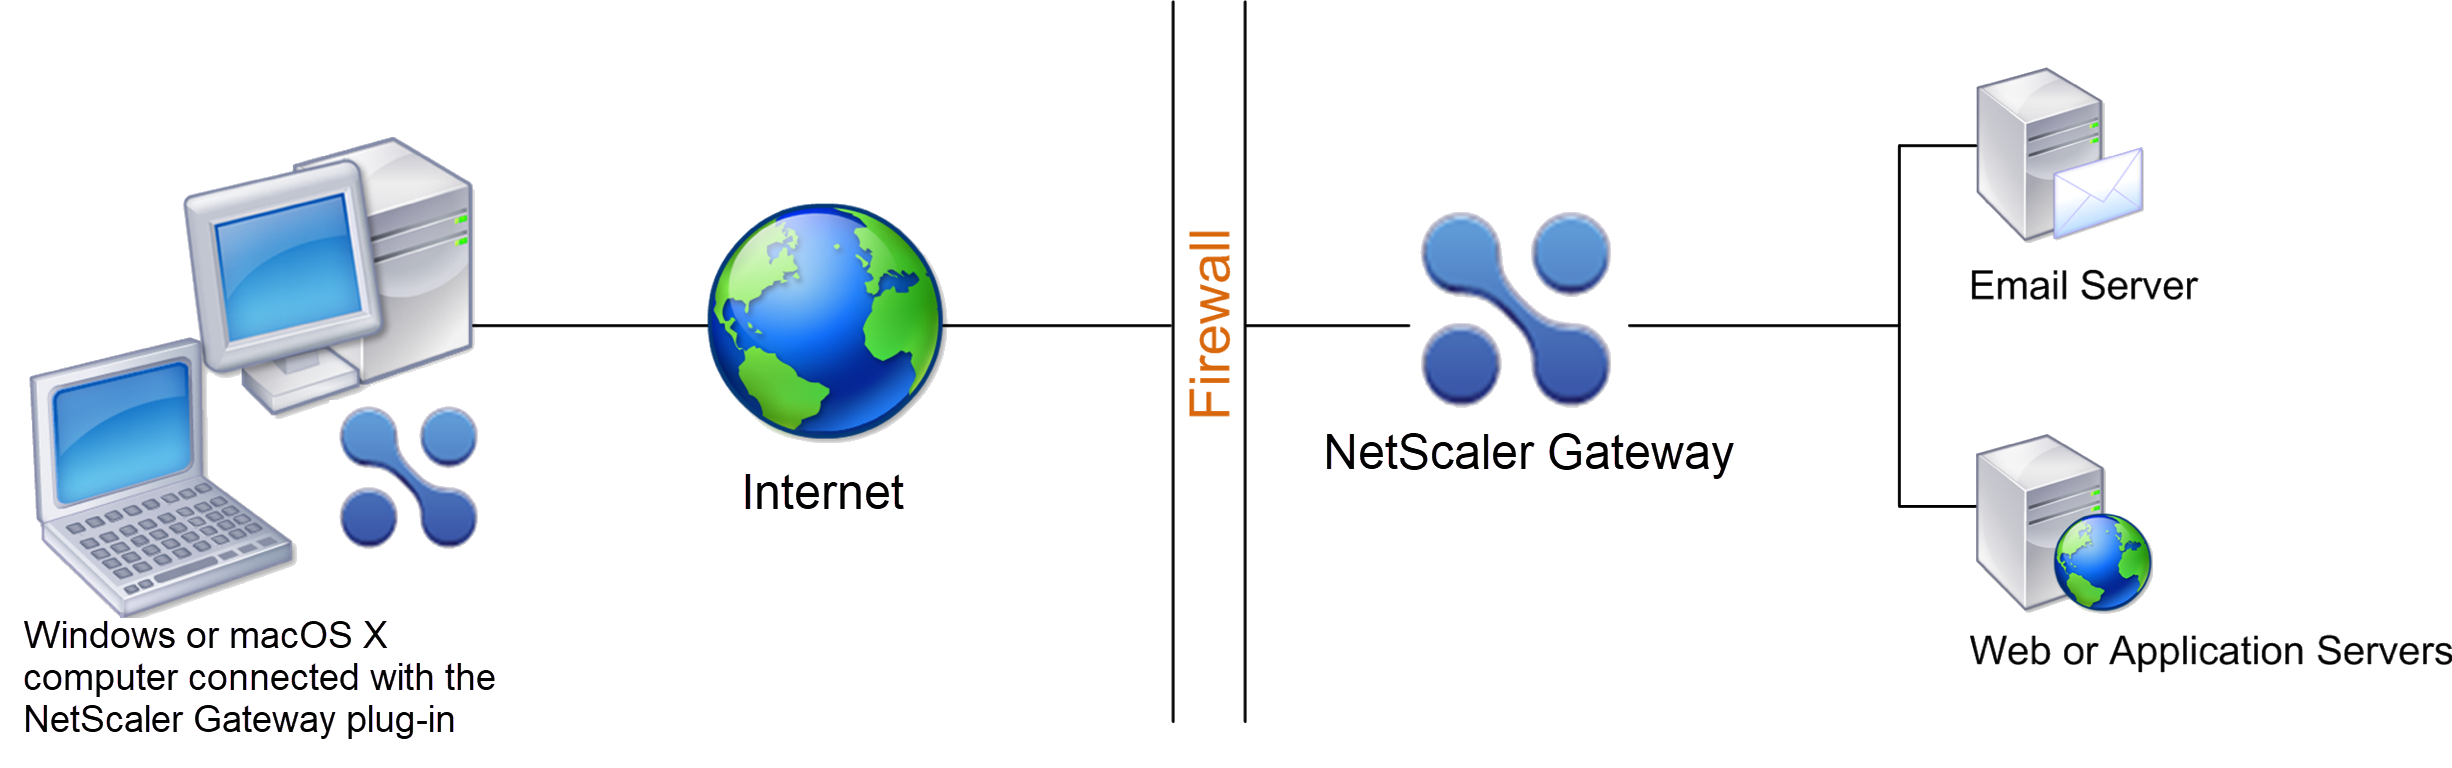 Bereitstellen von NetScaler Gateway im sicheren Netzwerk